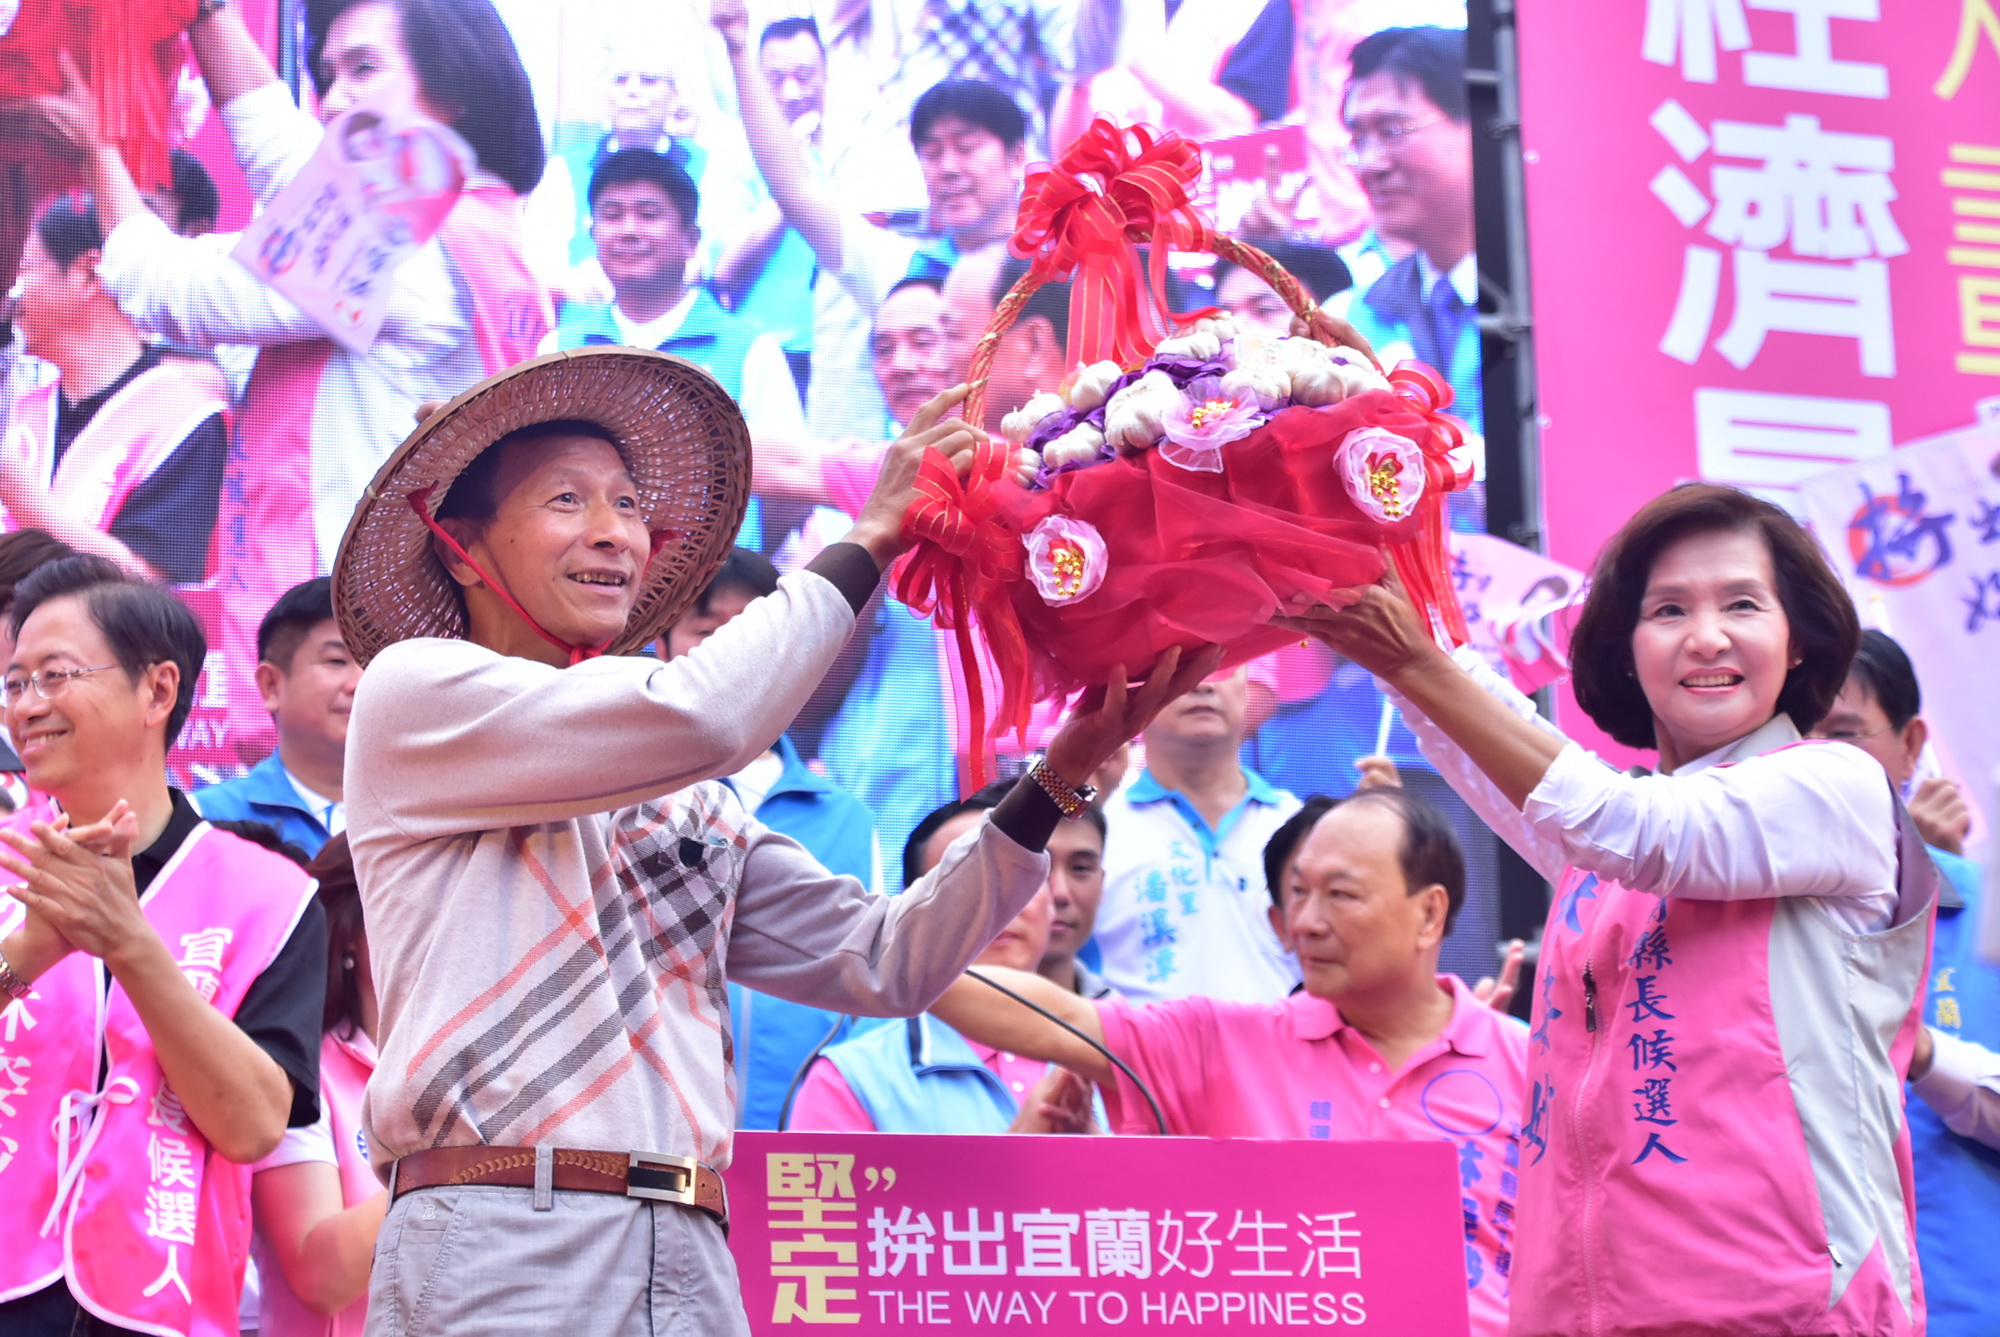 林姿妙溪北競選總部成立 數千位支持者到場力挺祝賀 | 葛瑪蘭新聞網